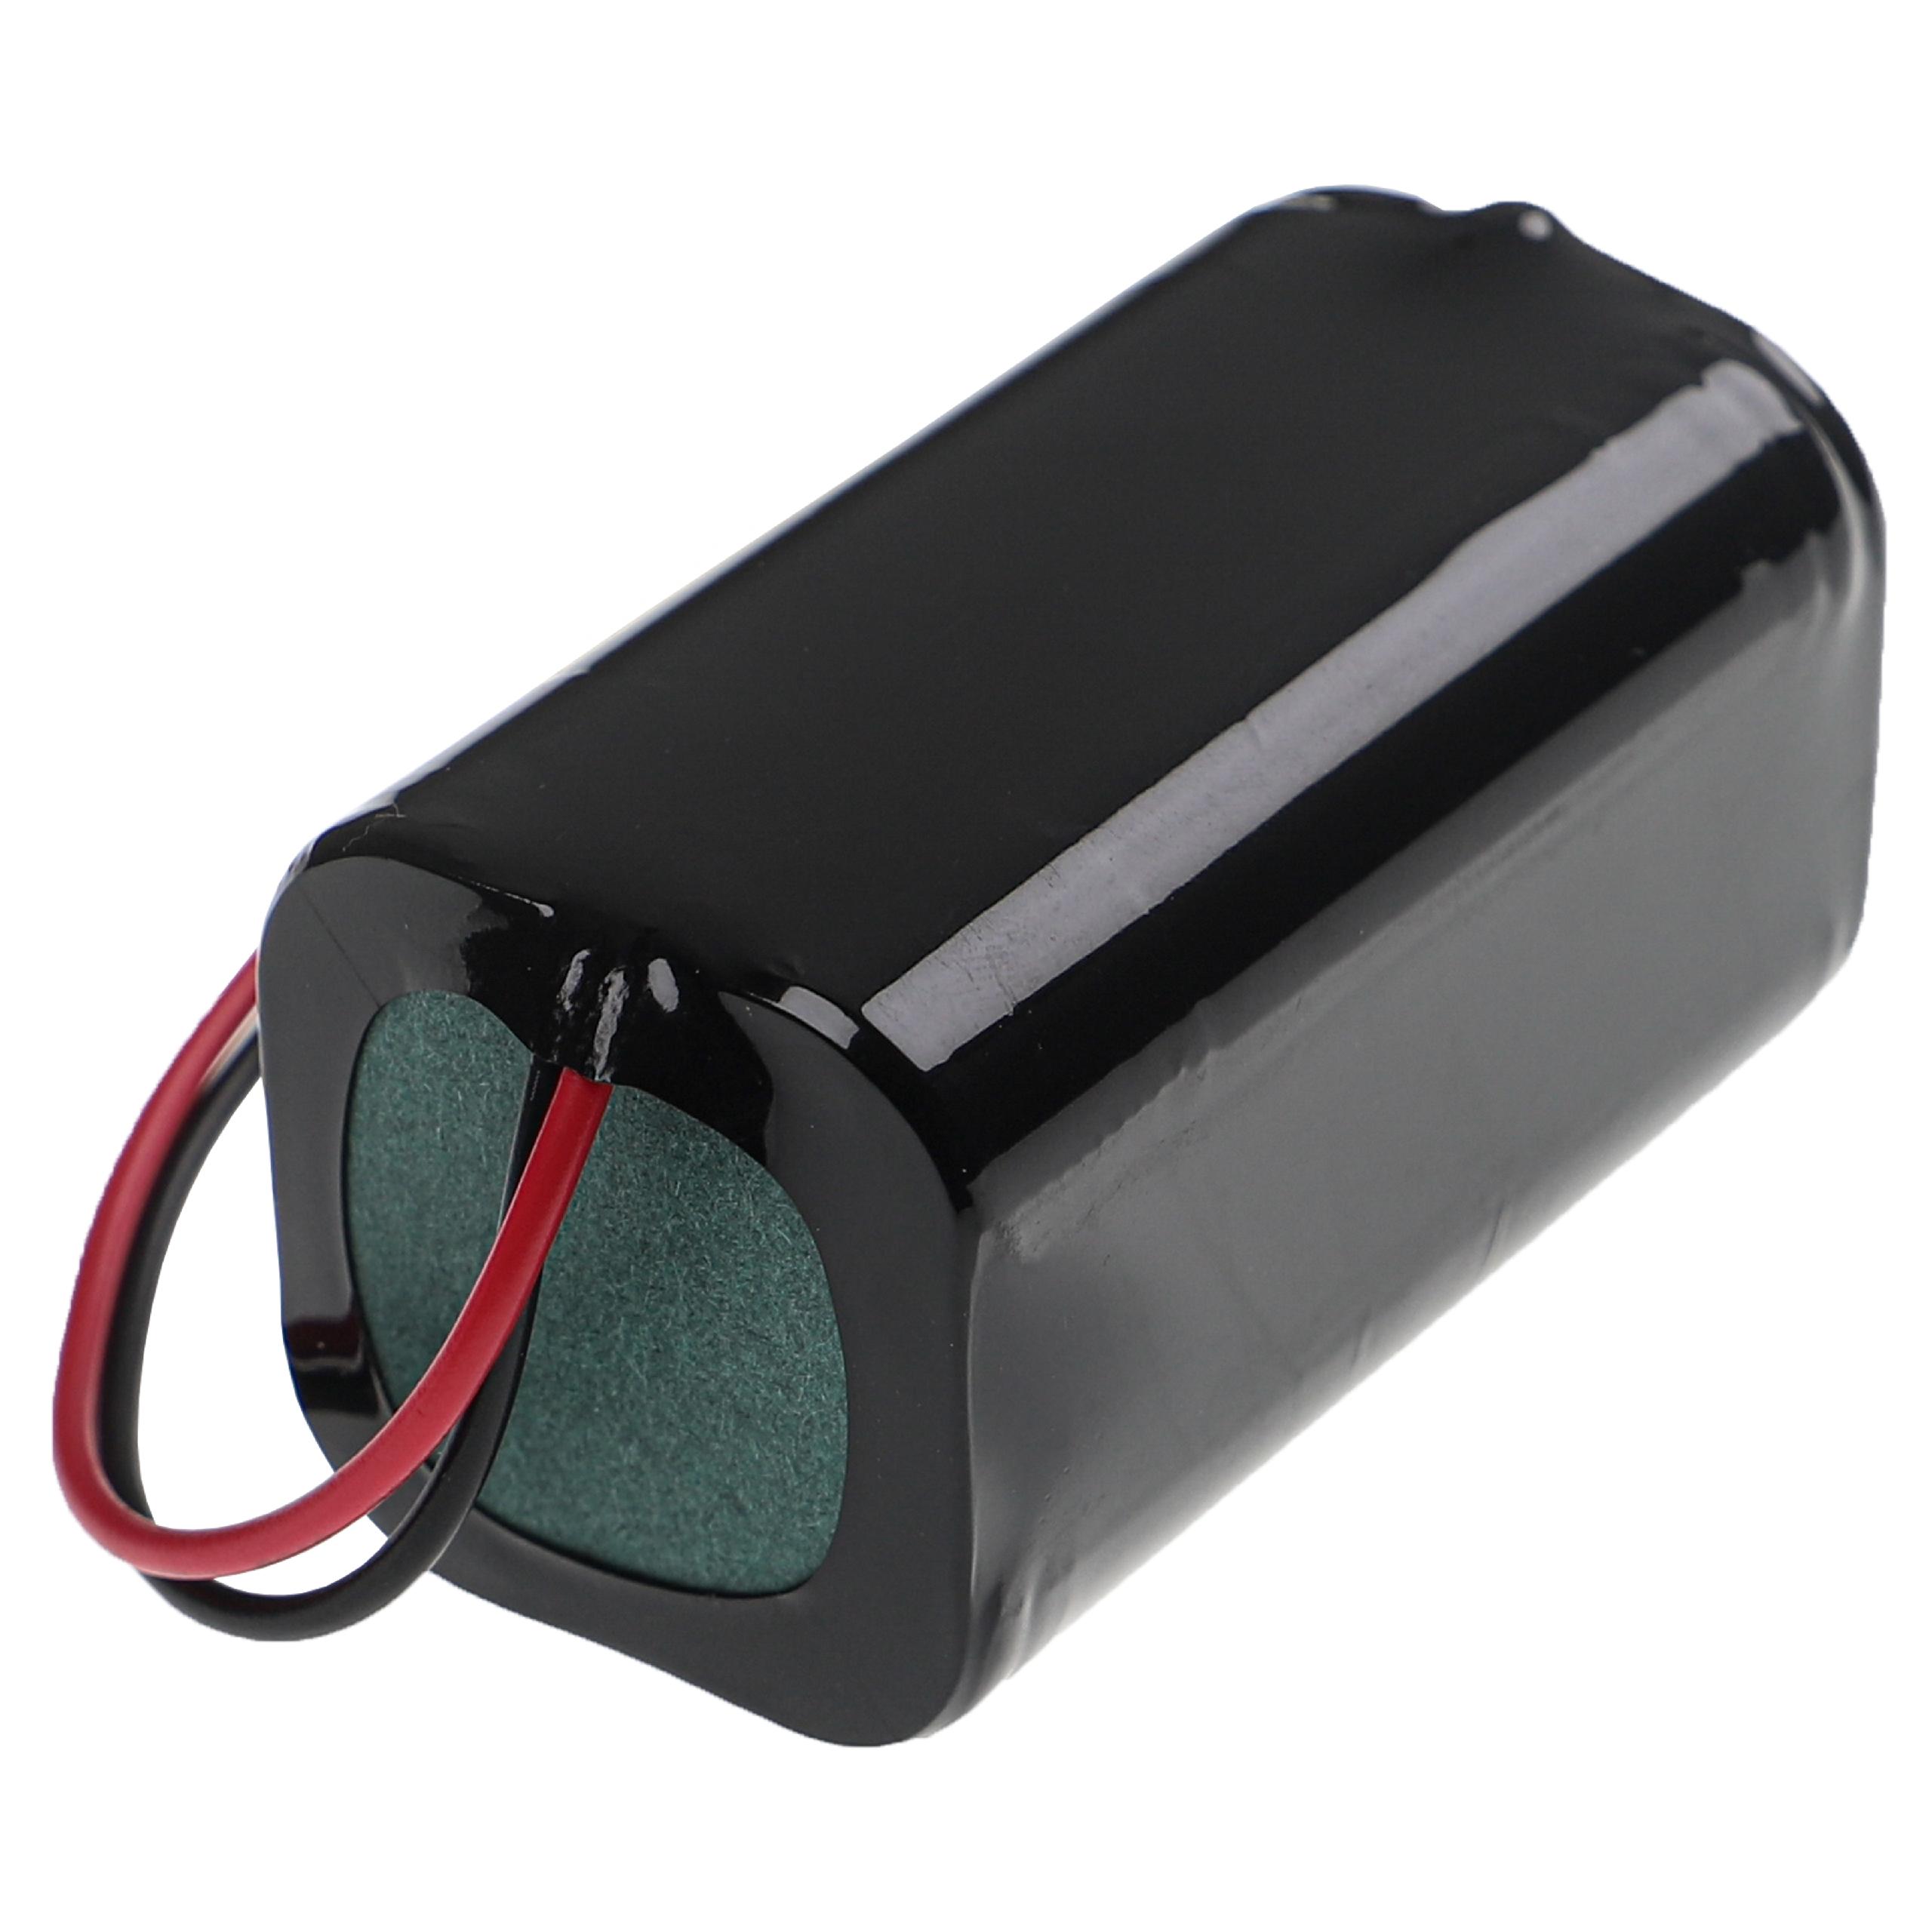 Batterie remplace Ecovacs 4ICR19/65, BL7402A, INR18650-M26-4S1P pour robot aspirateur - 3000mAh 14,8V Li-ion